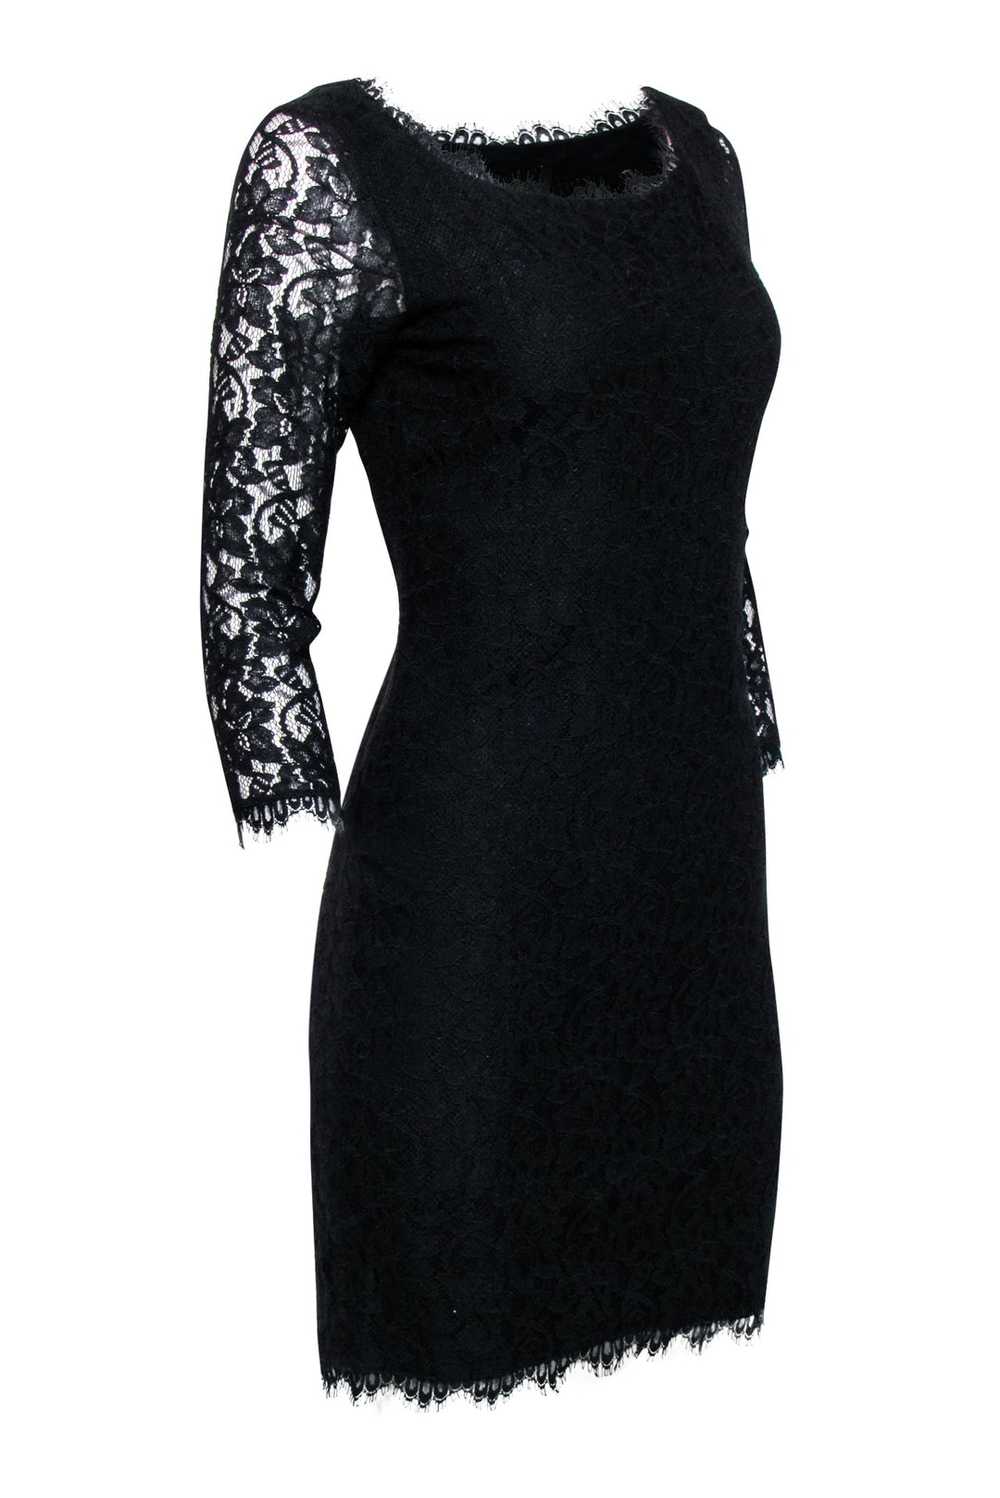 Diane von Furstenberg - Black Lace Crop Sleeve Dr… - image 2